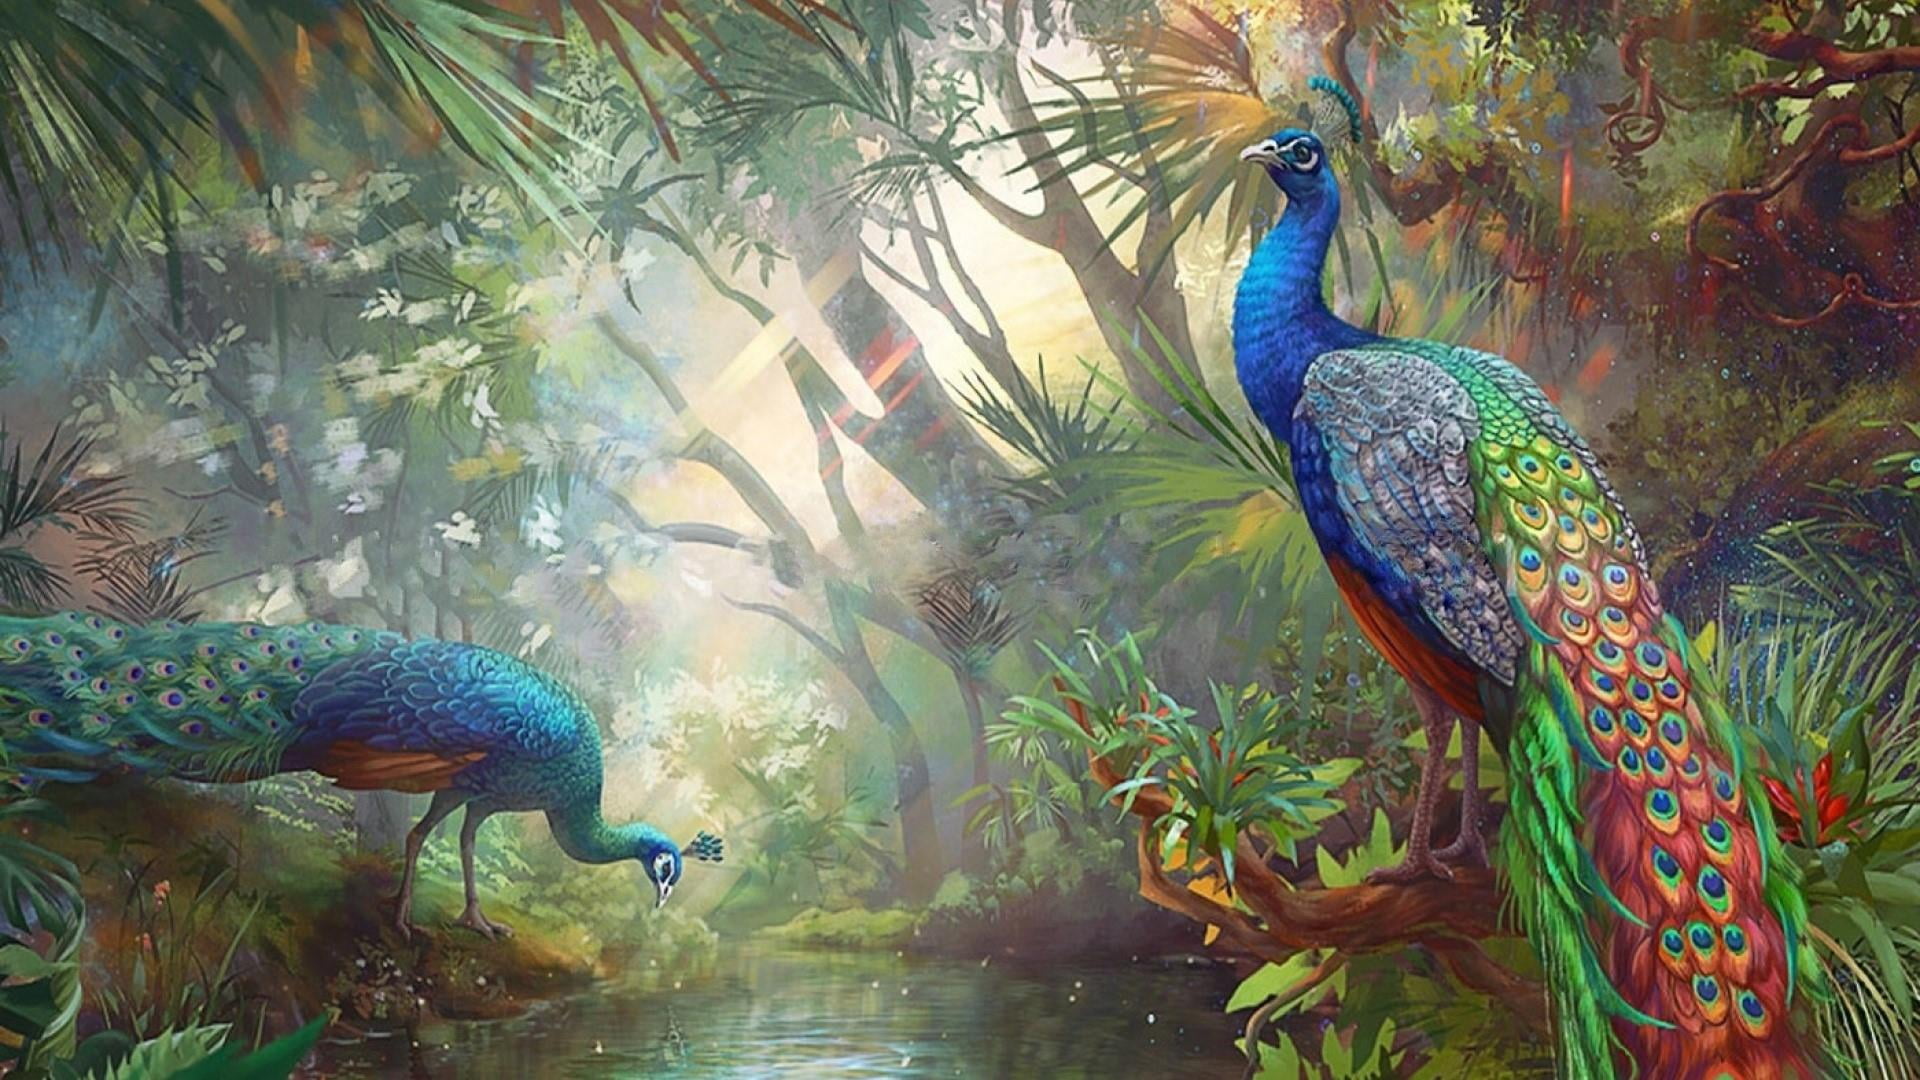 peafowl, peacock, bird, birds, painting, painting art, wildlife